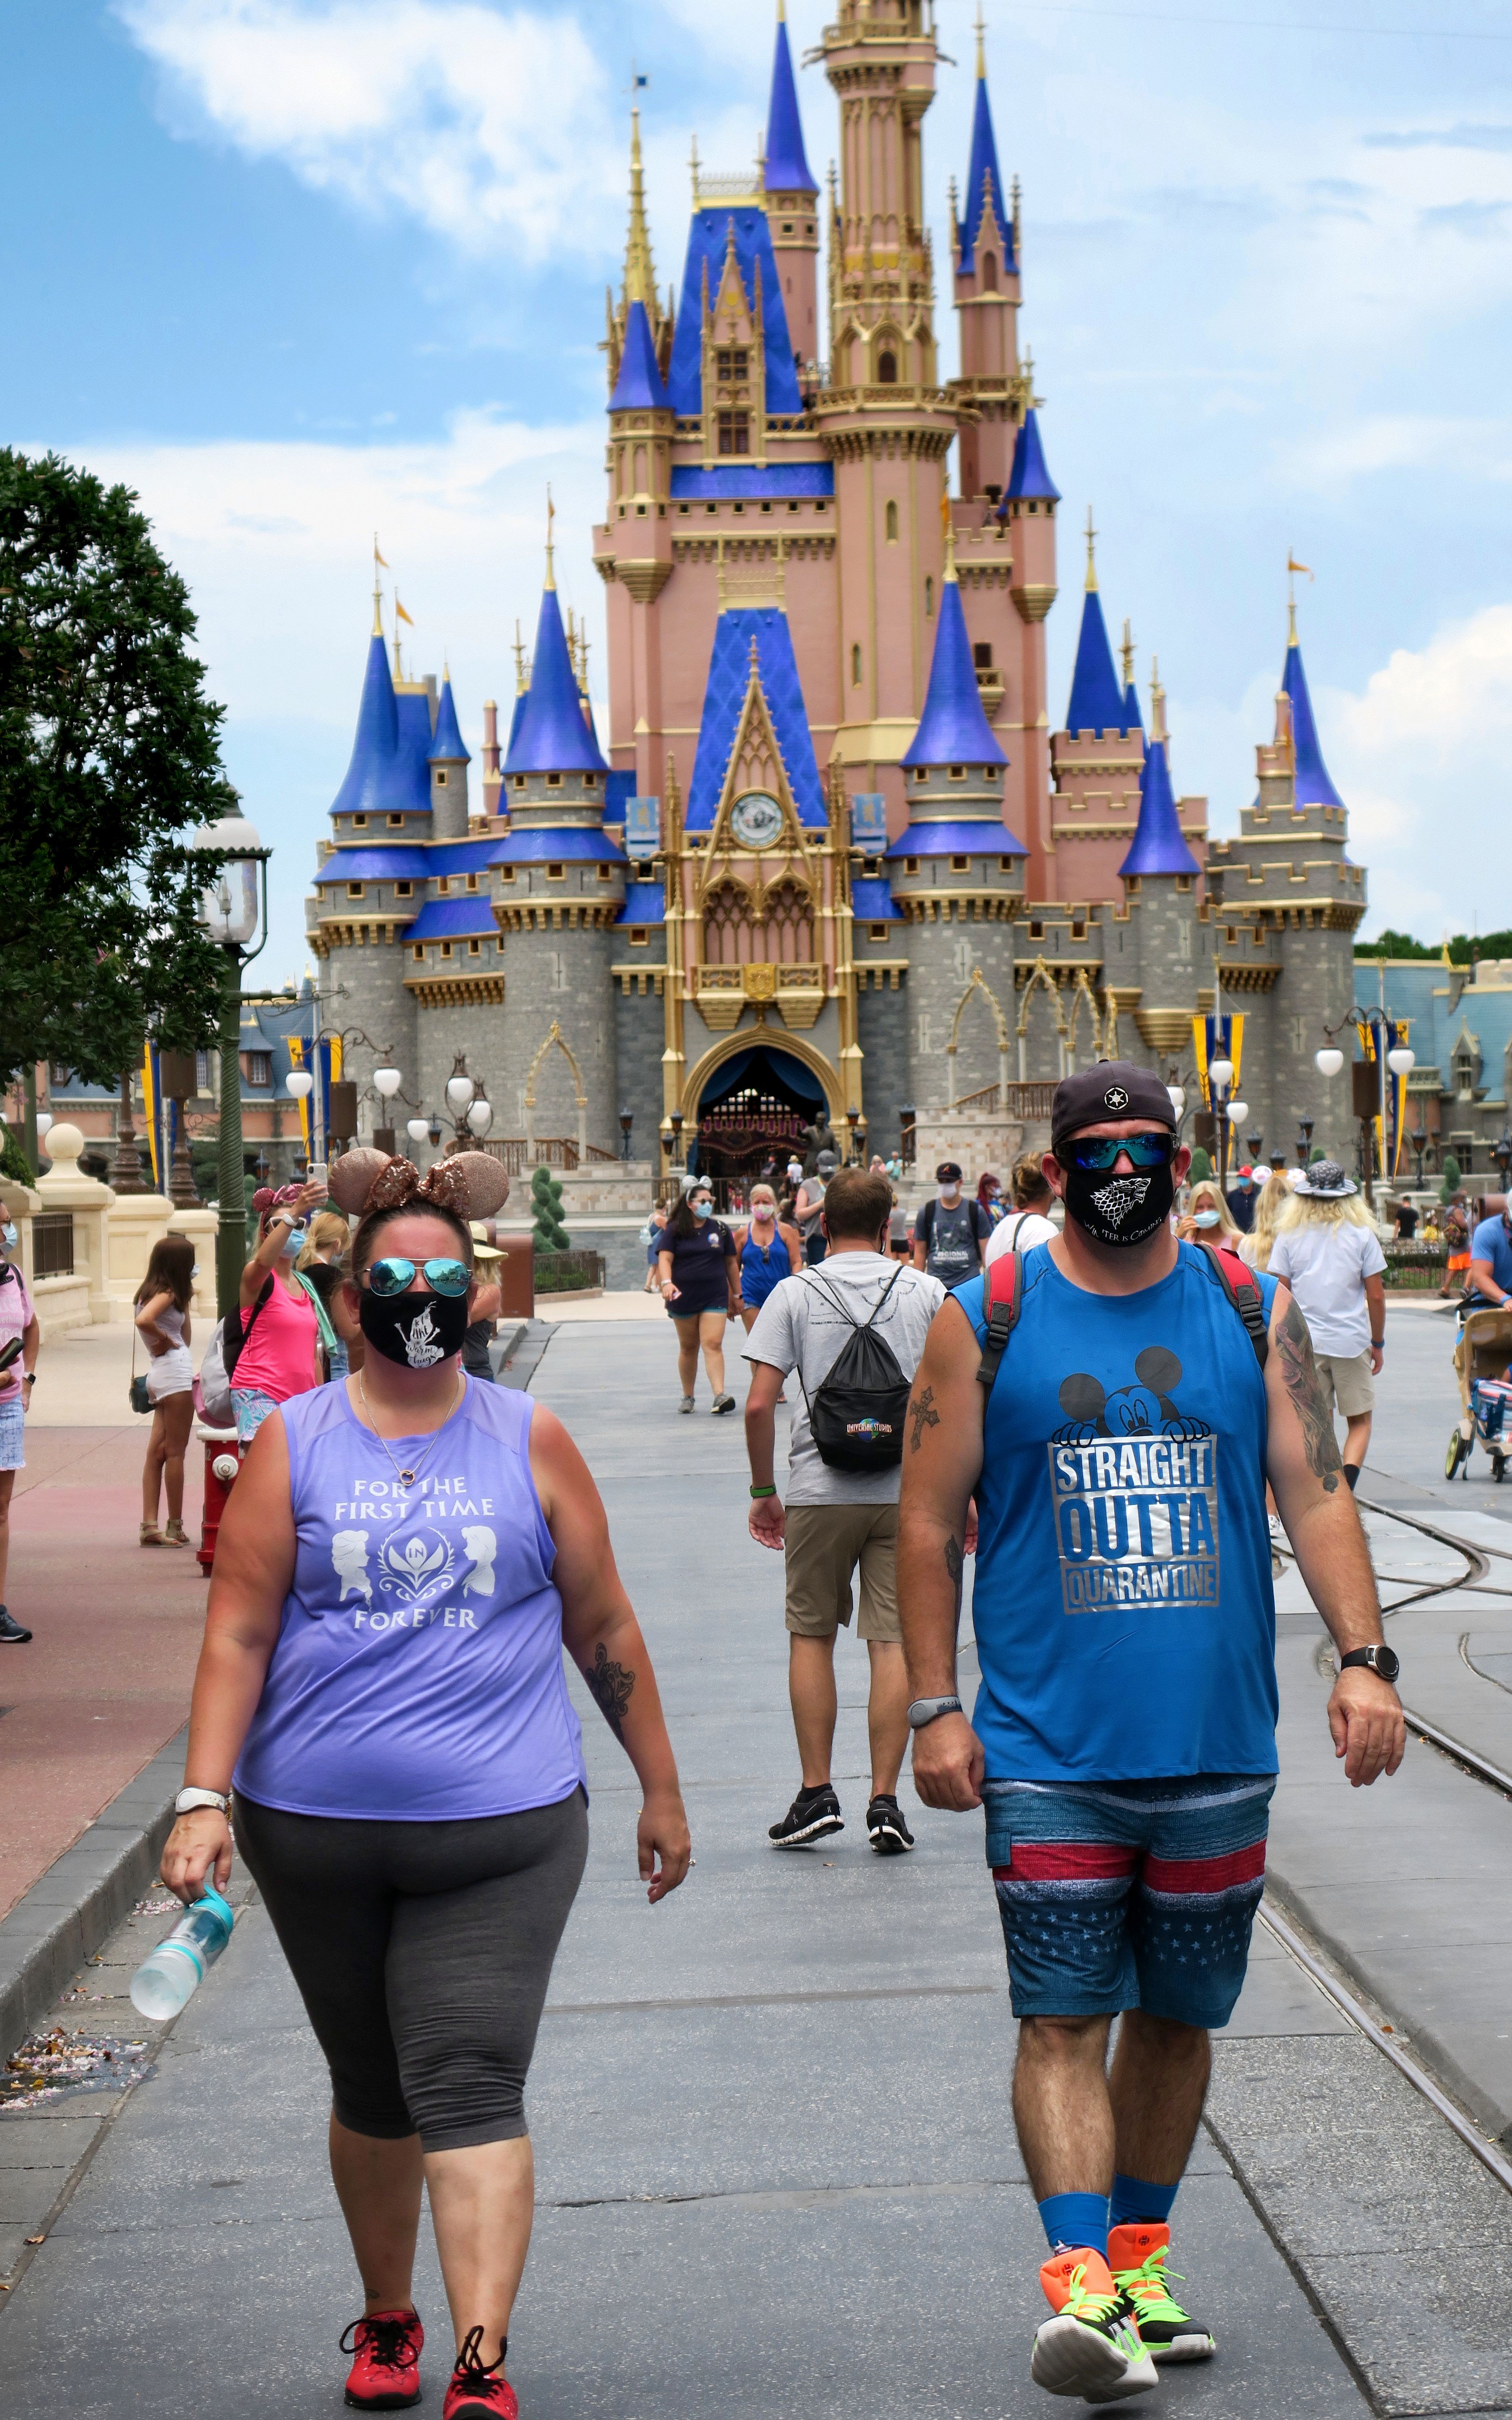 Walt Disney World abre oficialmente el sábado con el aumento de los casos  de coronavirus en Florida. ¿Está listo Disney? – Orlando Sentinel